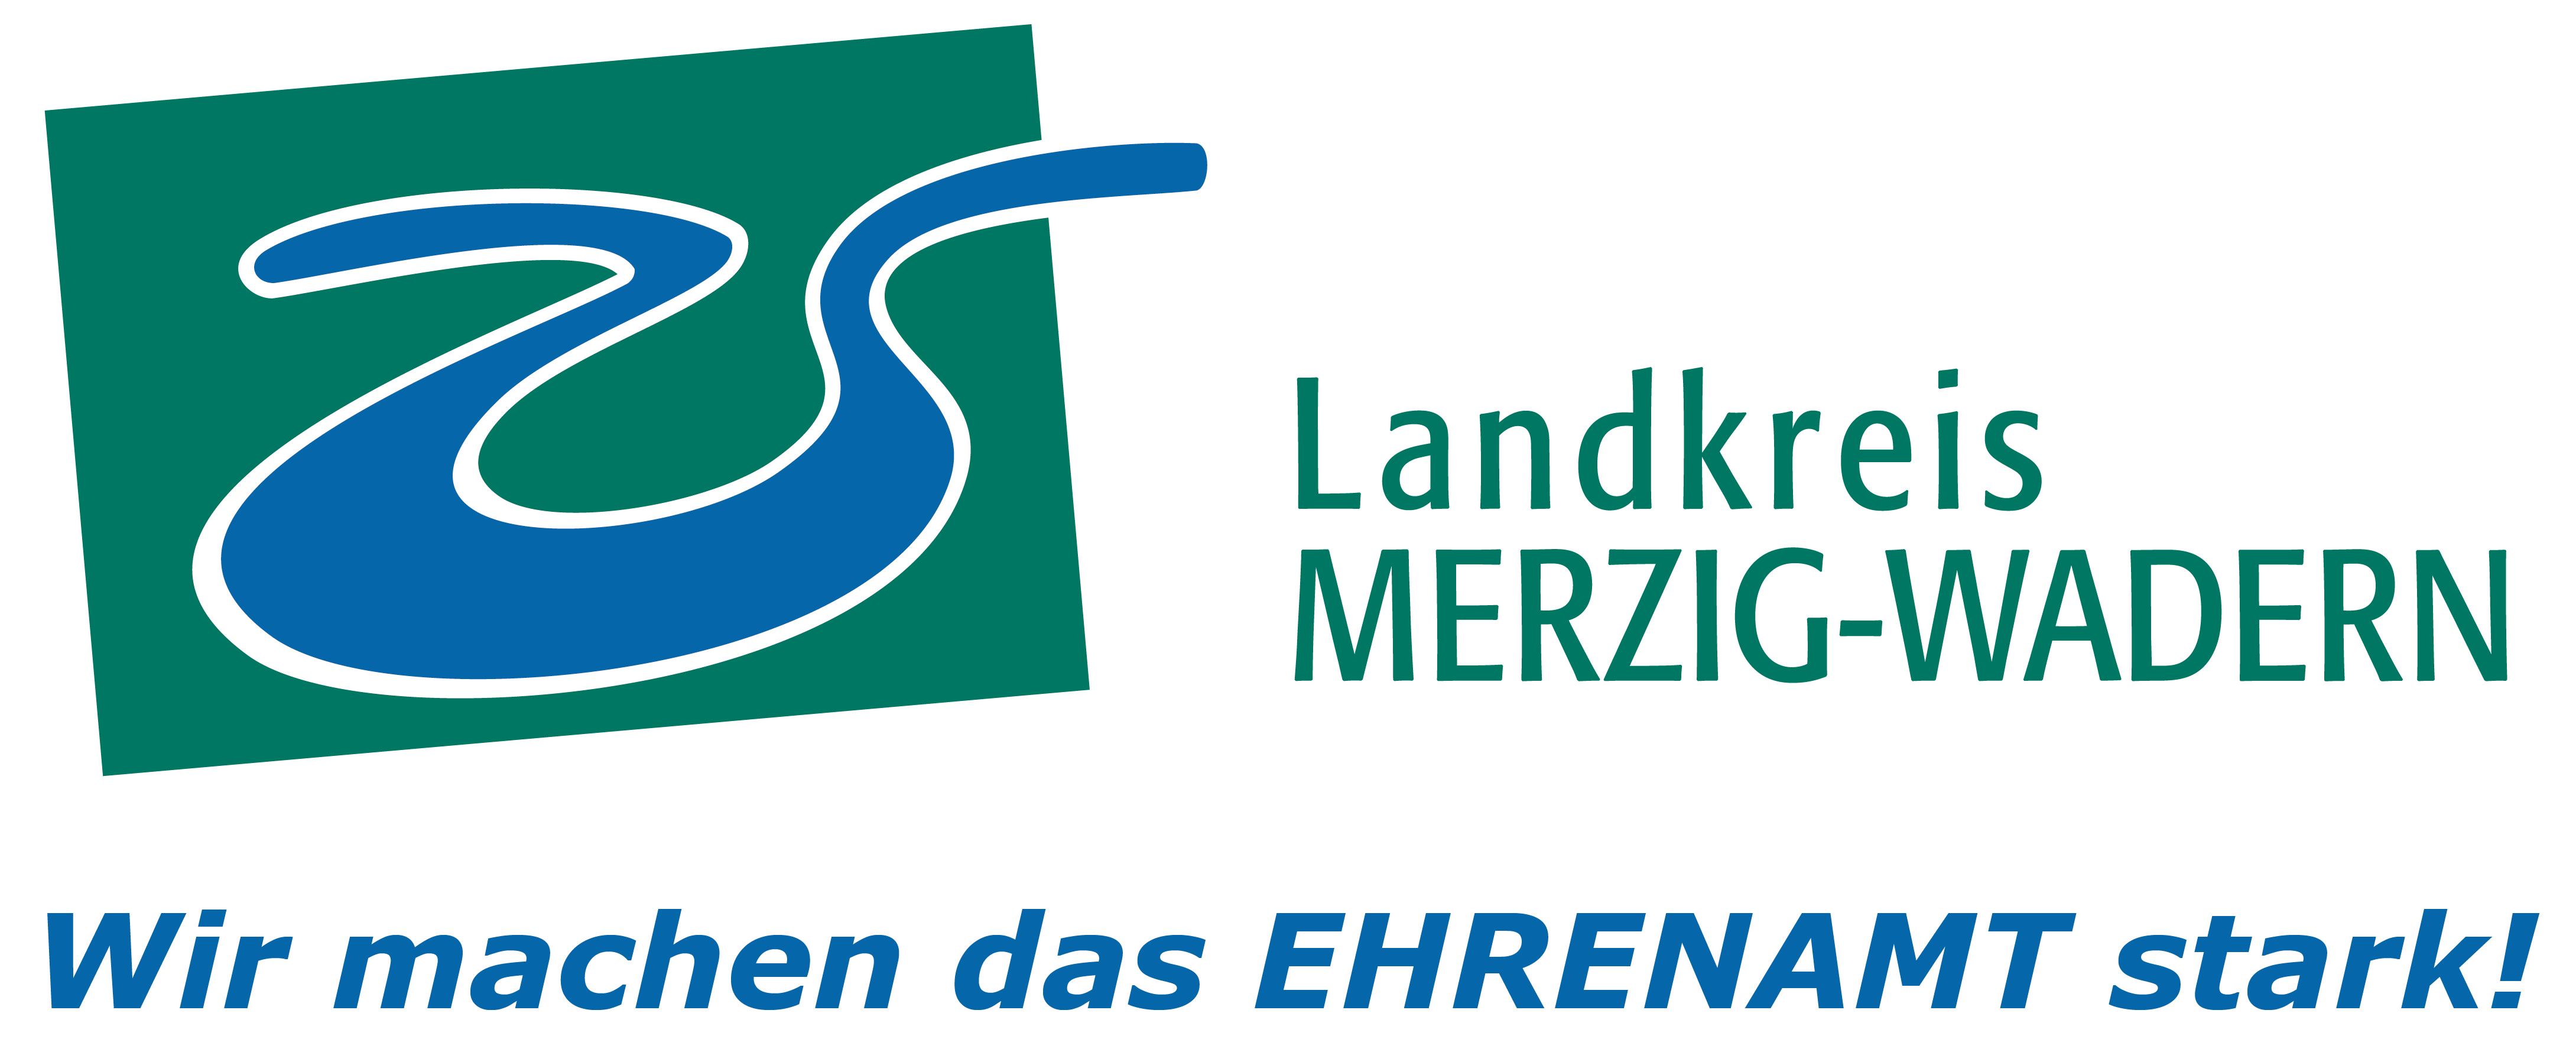 Profilbild des Vereins 'Ehrenamtsbörse des Landkreises Merzig-Wadern'